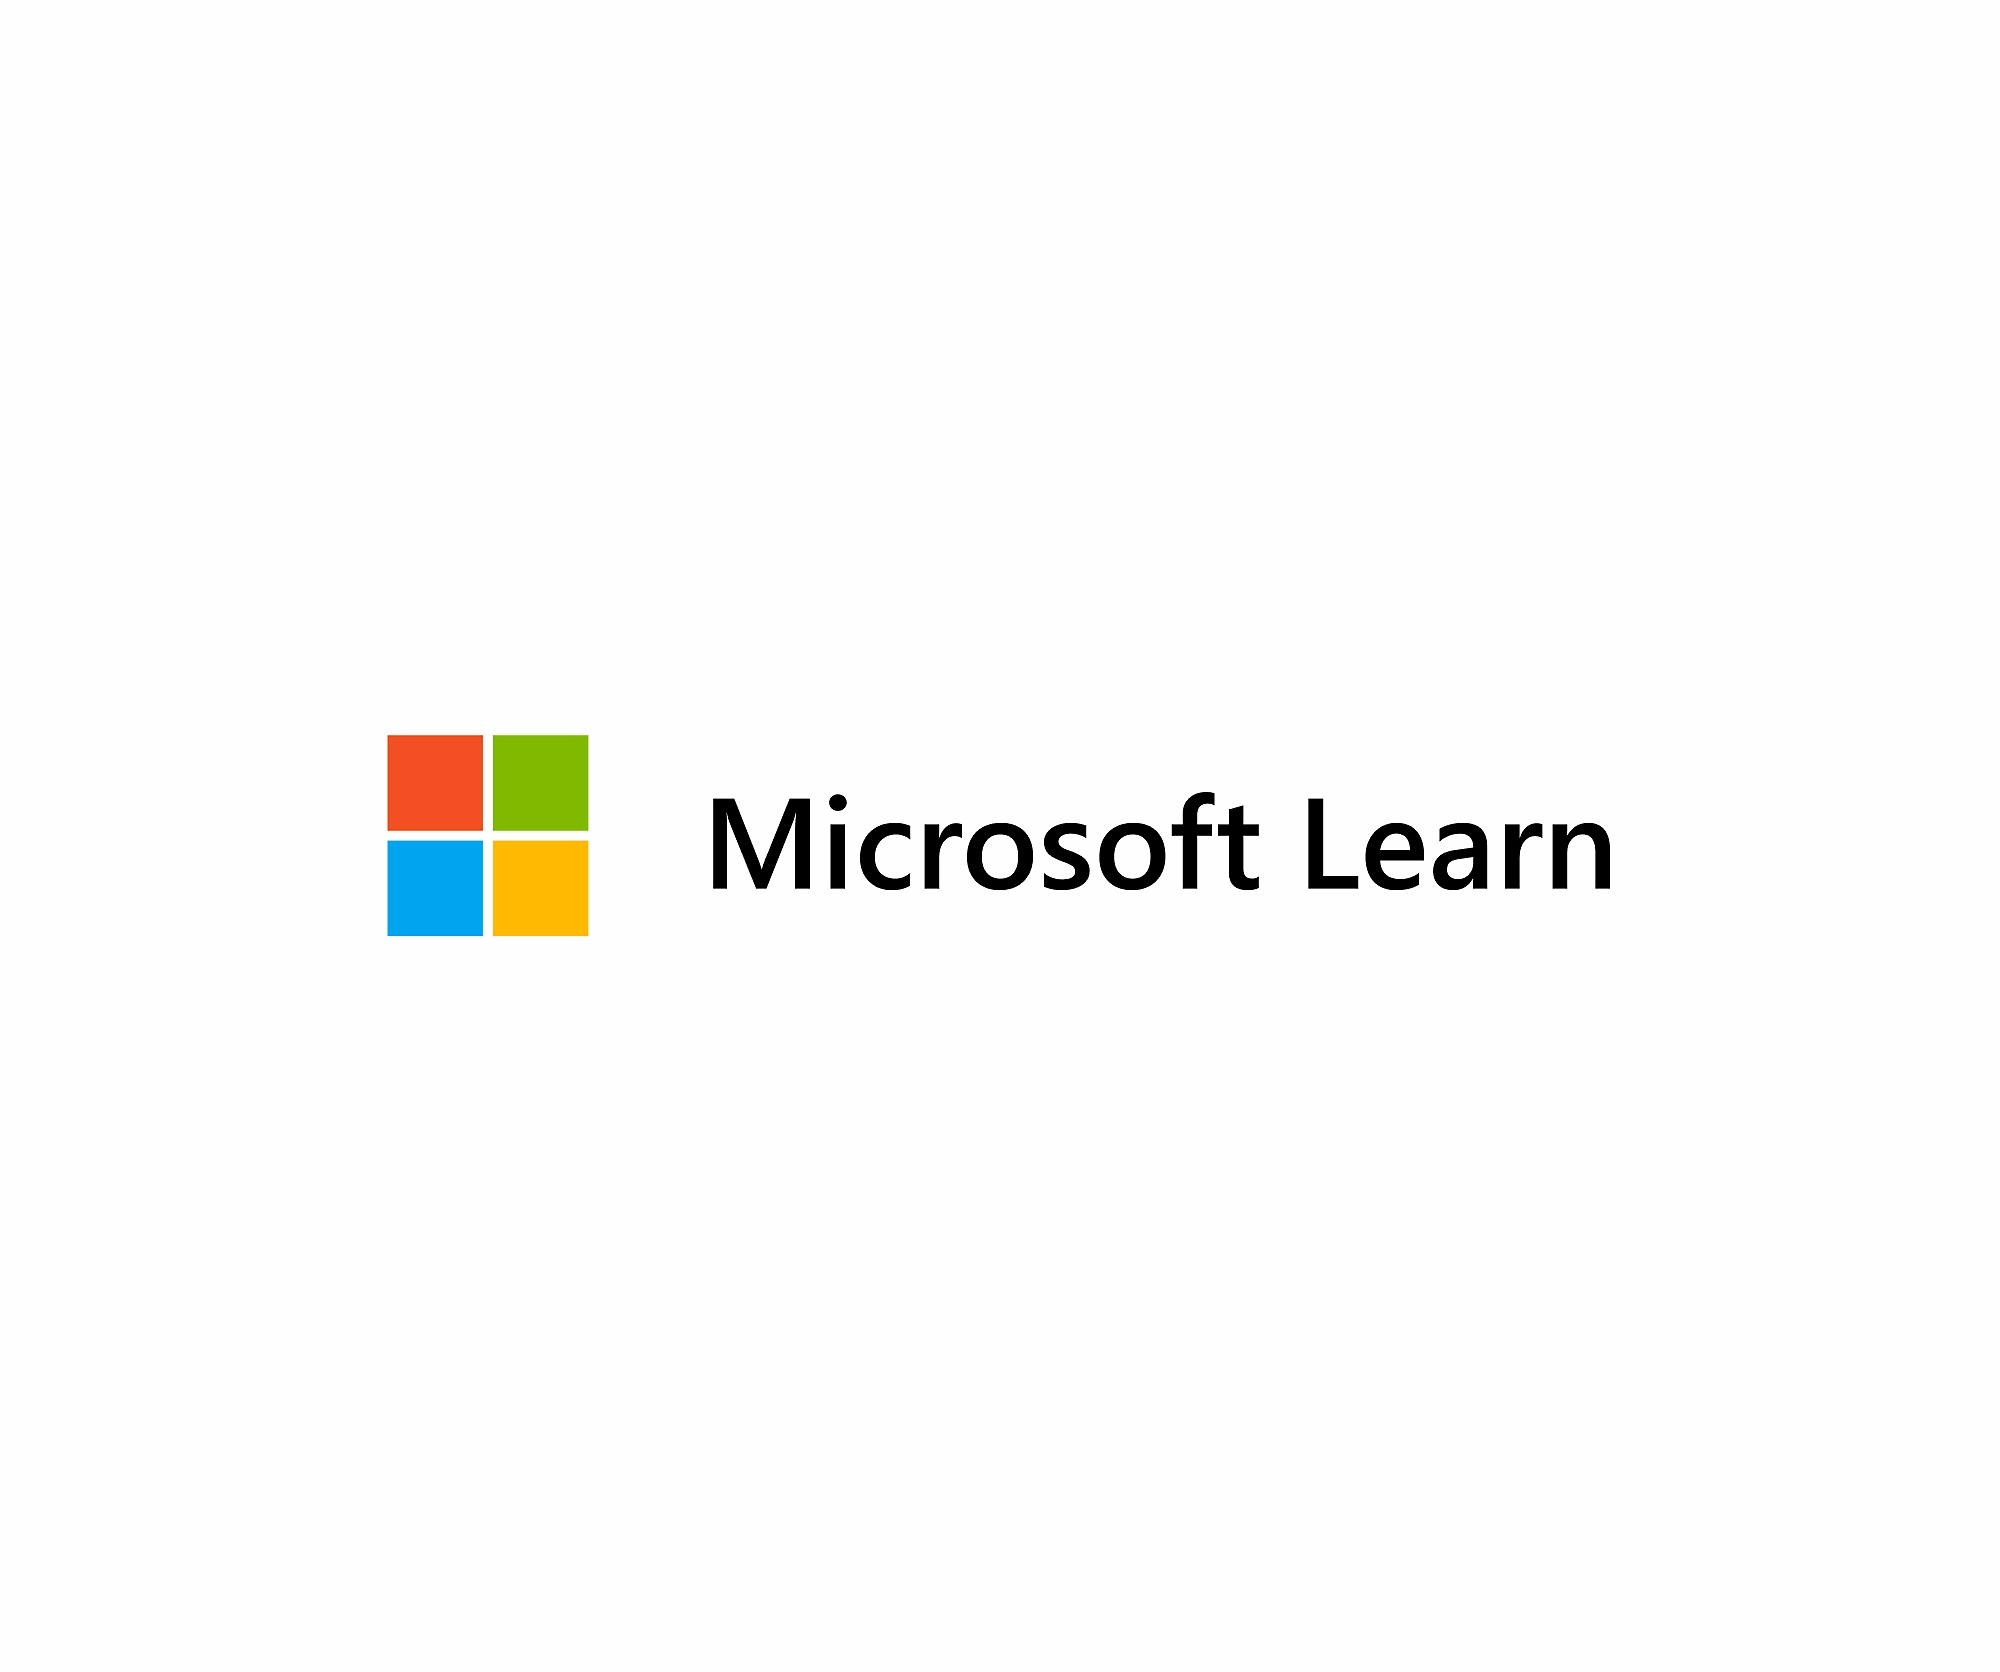 Microsoft learn